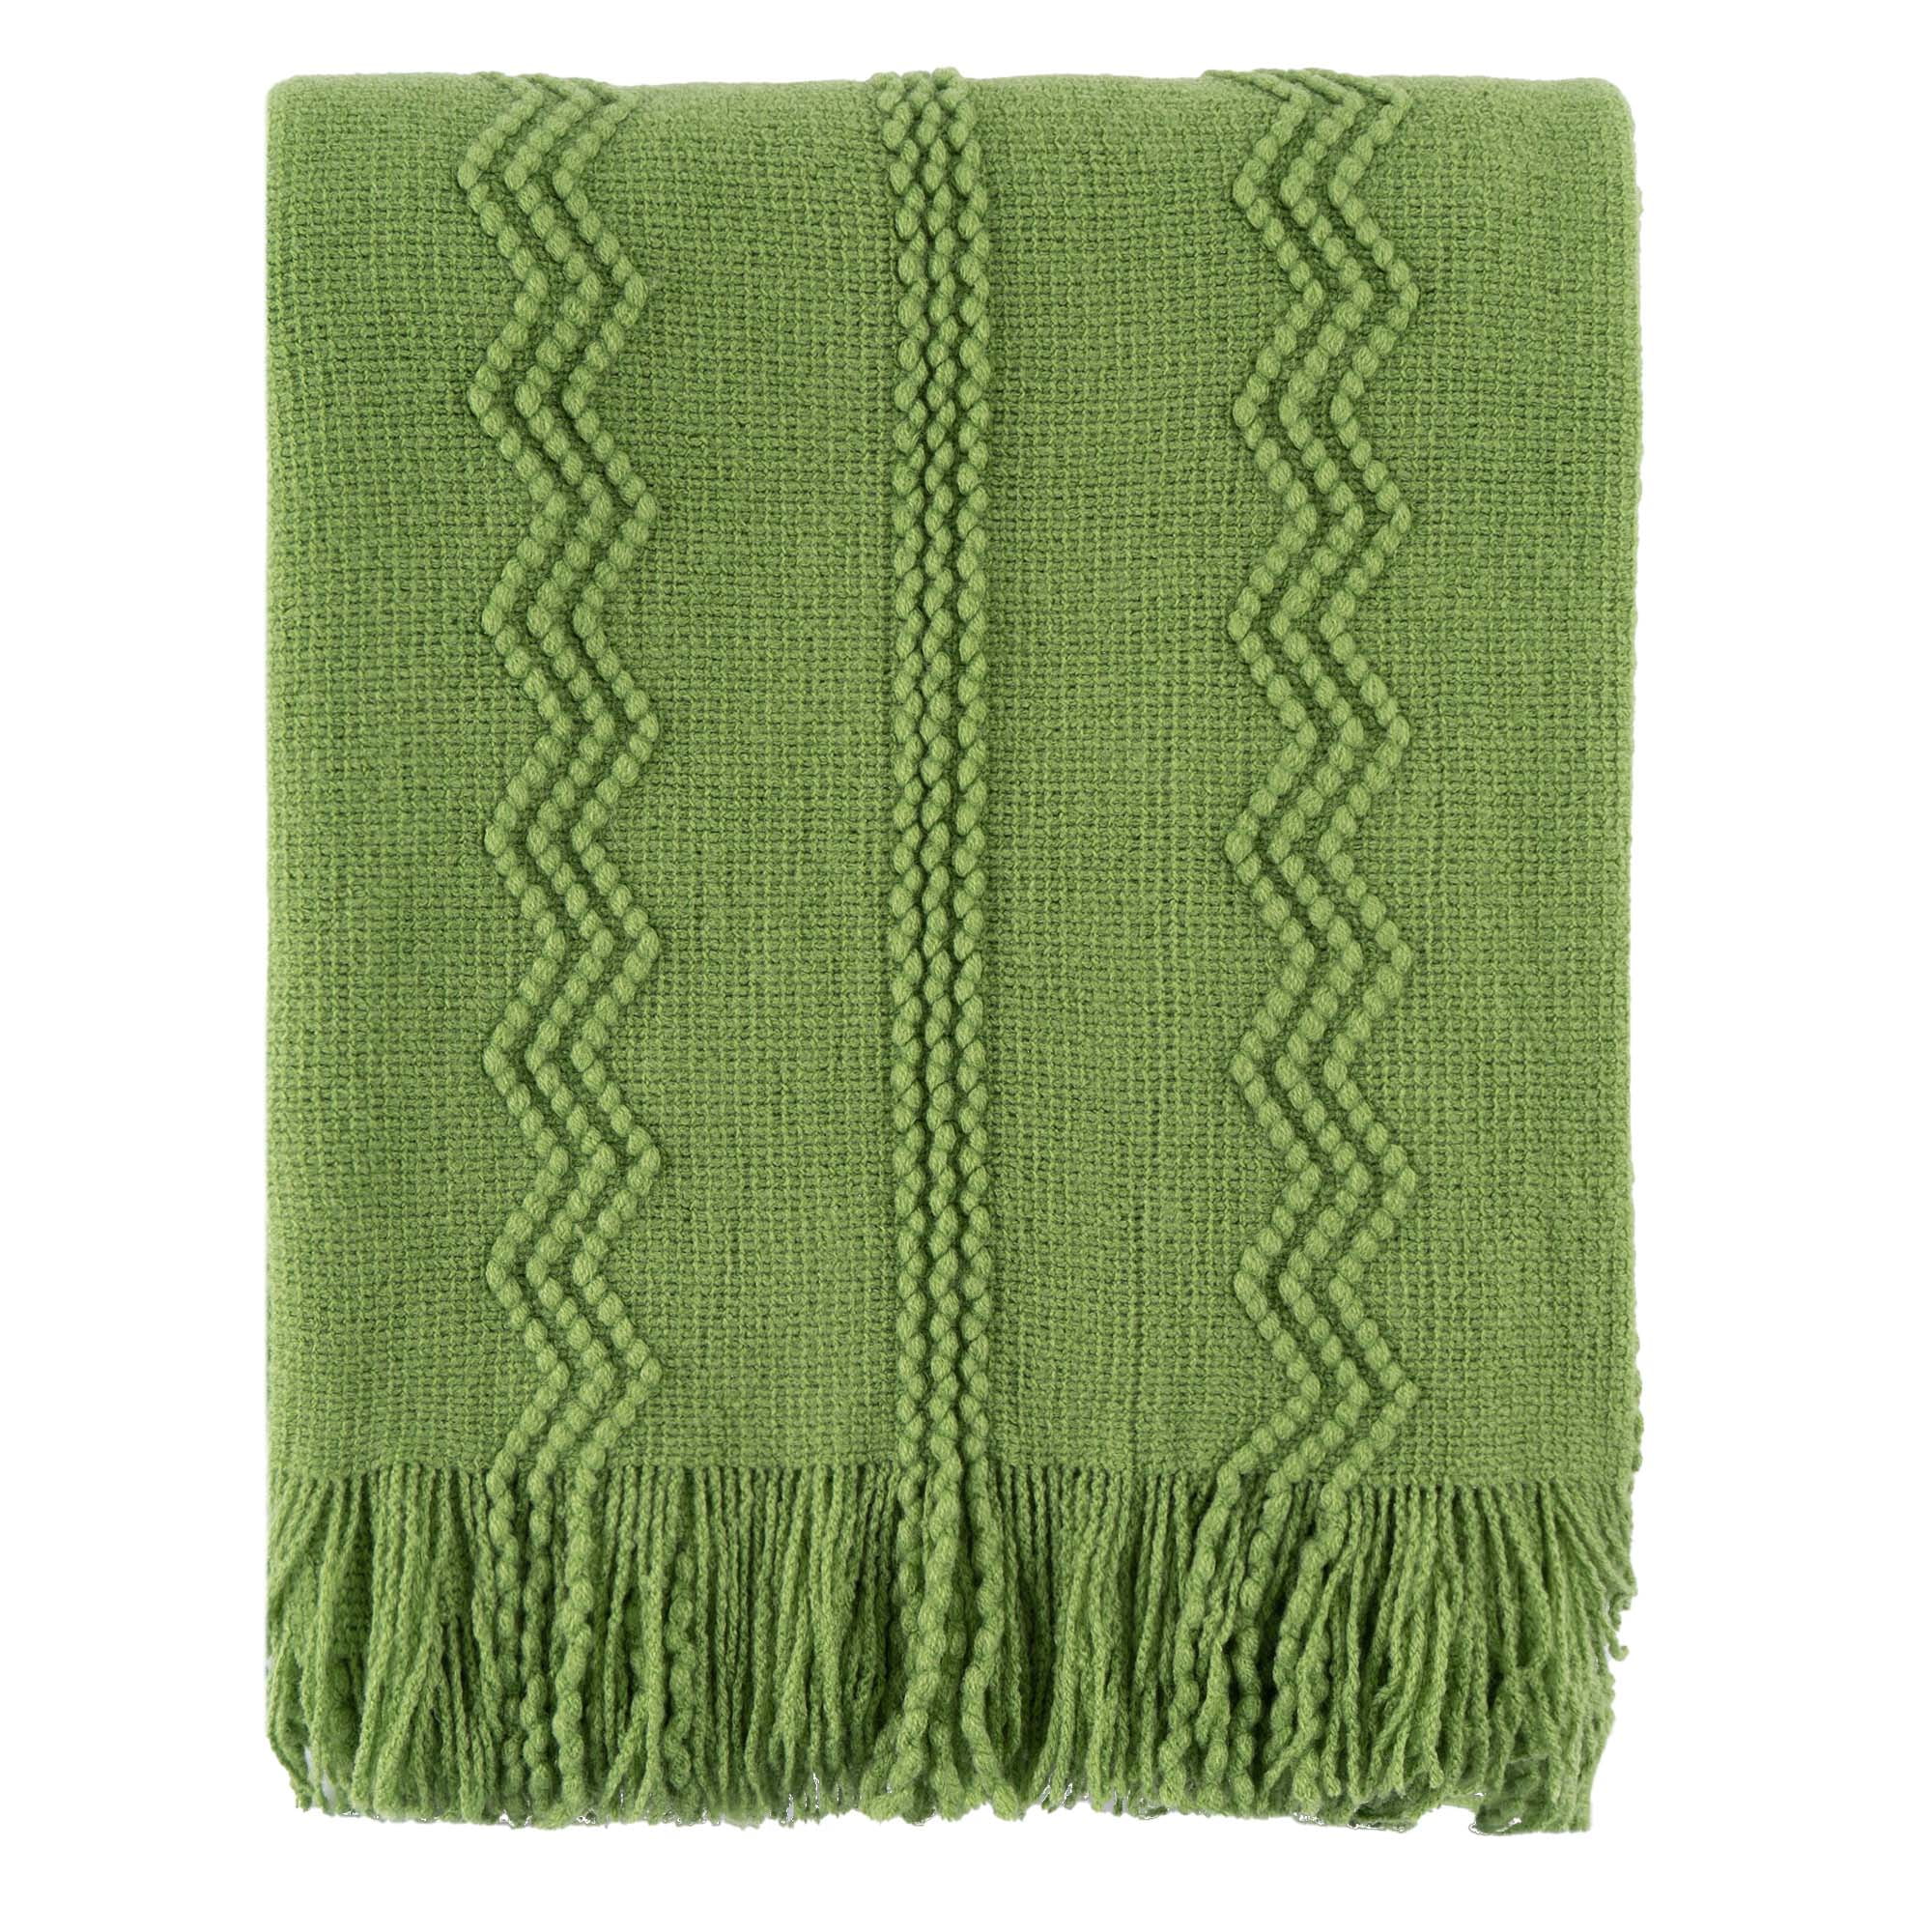 Battilo Green Throw Blanket Soft Lightweight Textured Sofa Blanket with ...